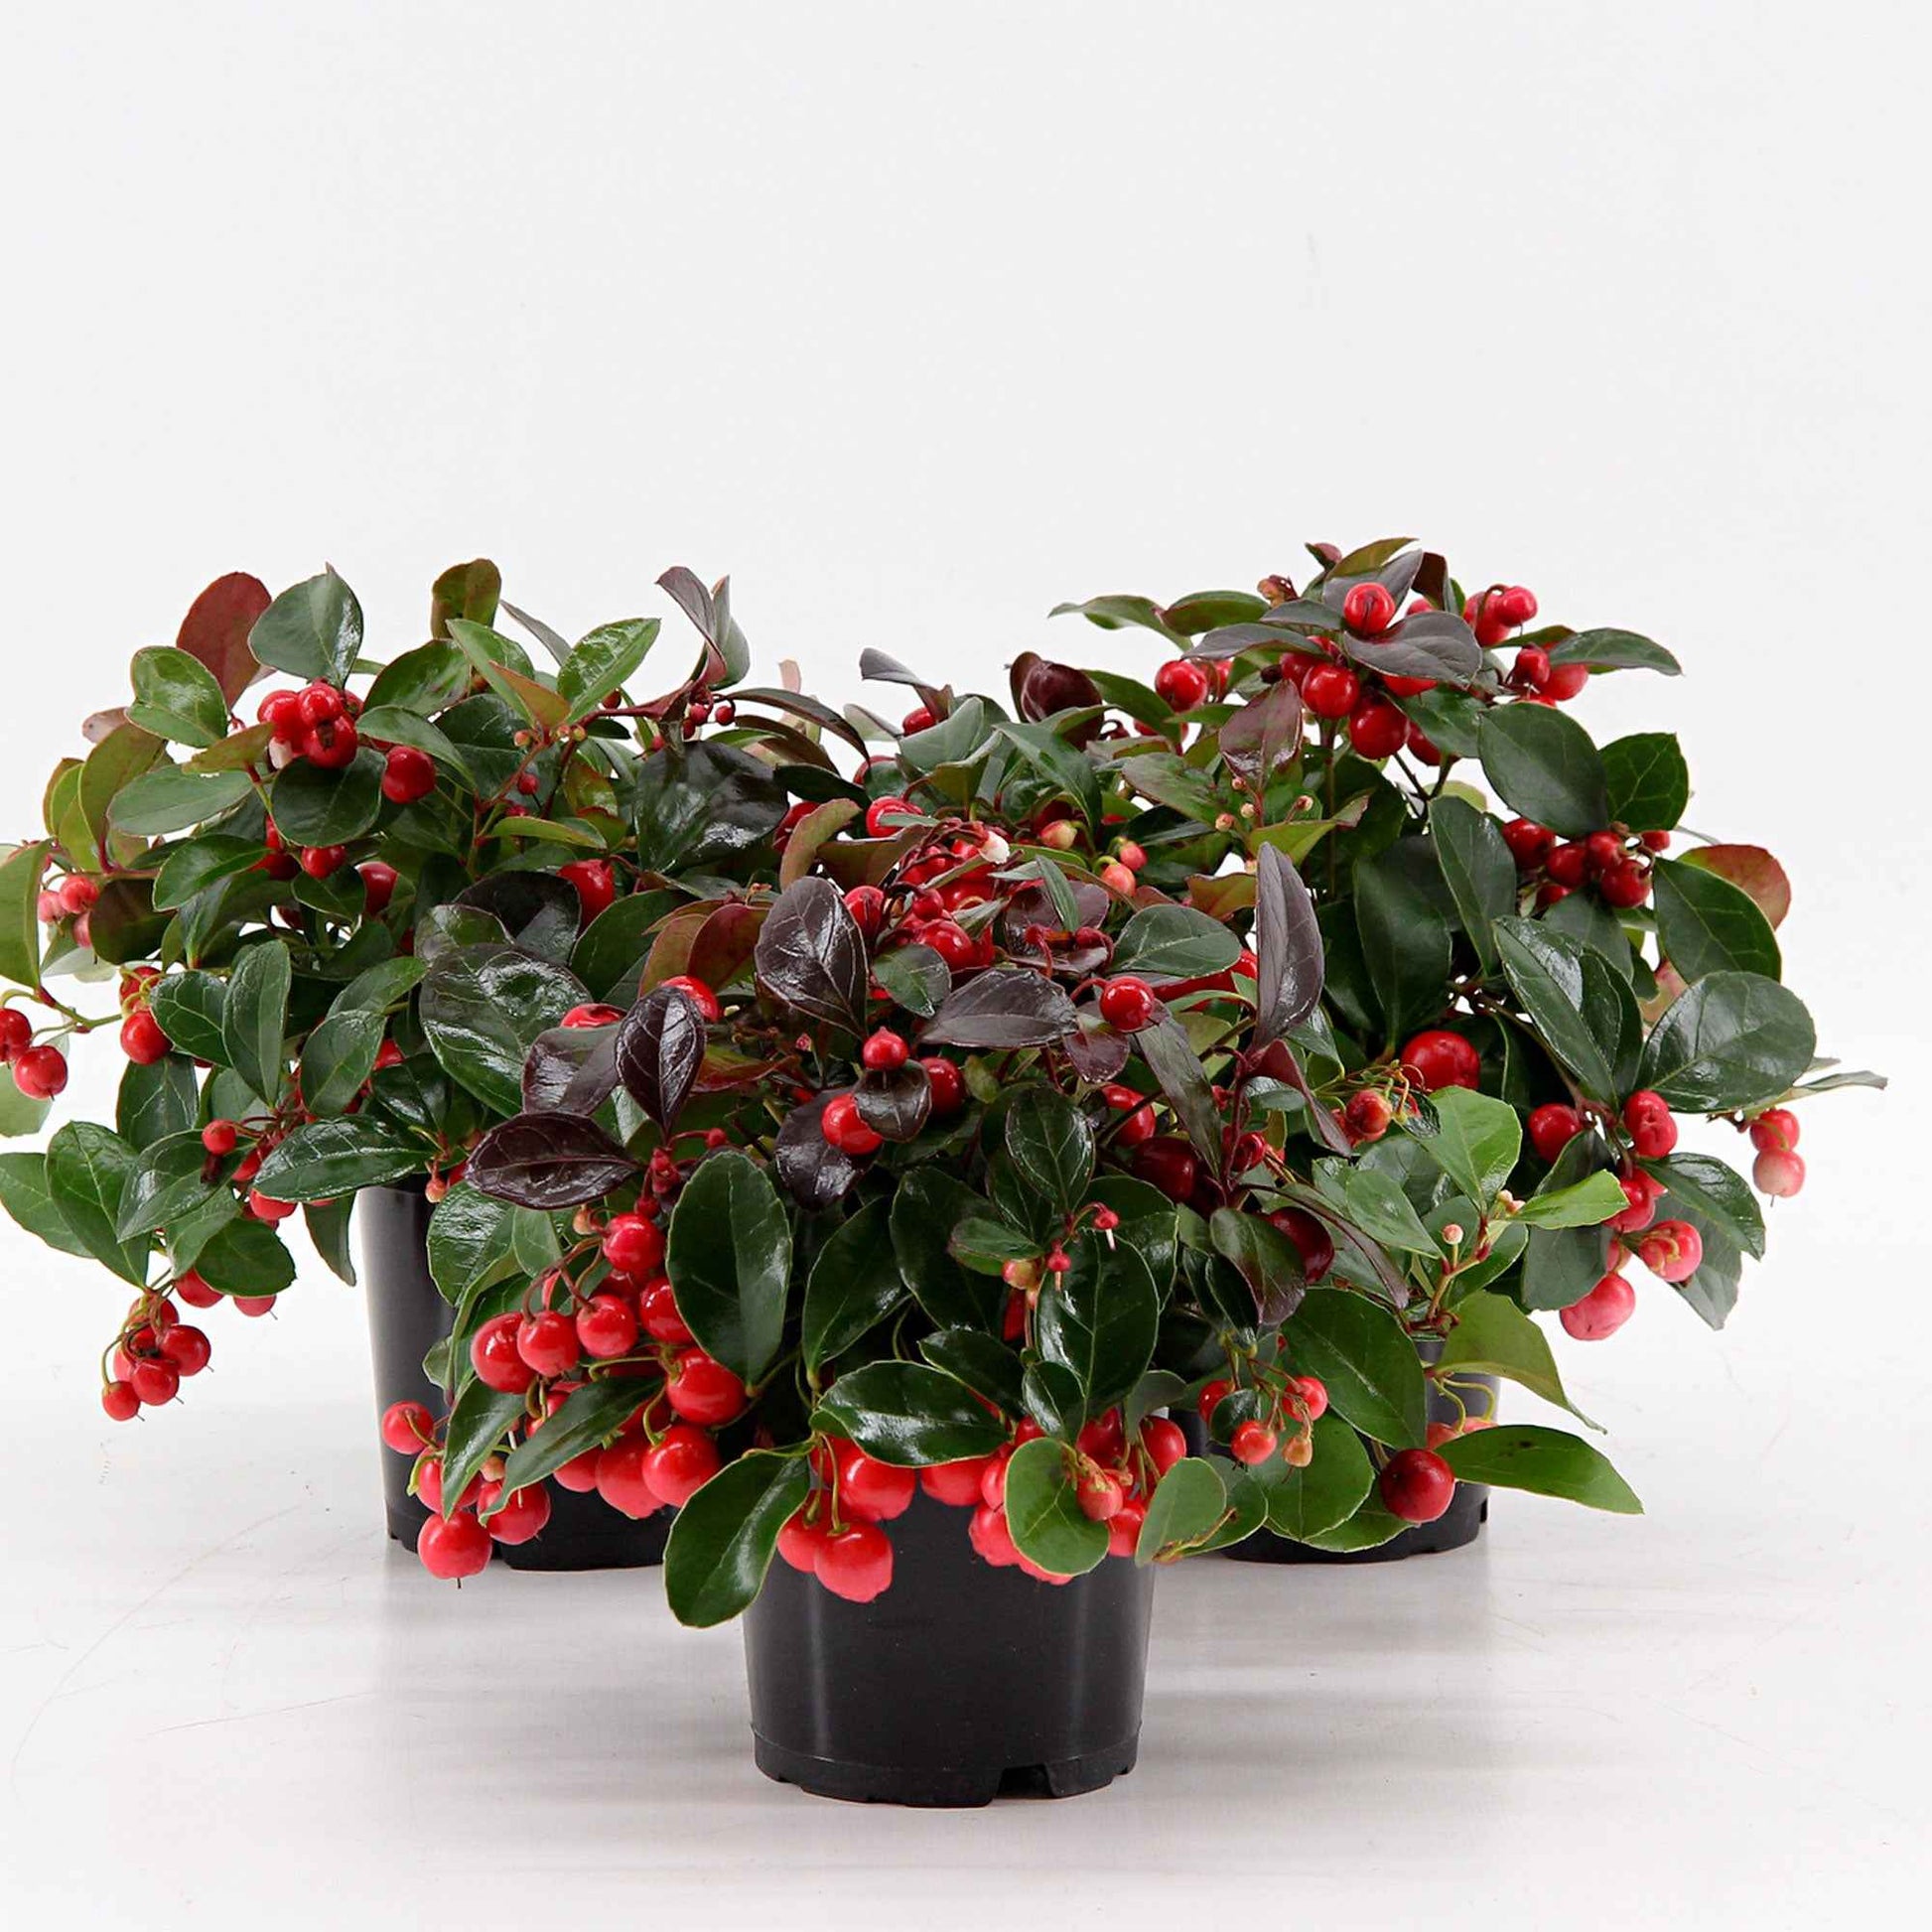 6x Niedere scheinbeere Gaultheria 'Big Berry' Rot inkl. Weidenkorb grau - Winterhart - Herbst- und Winterblüher